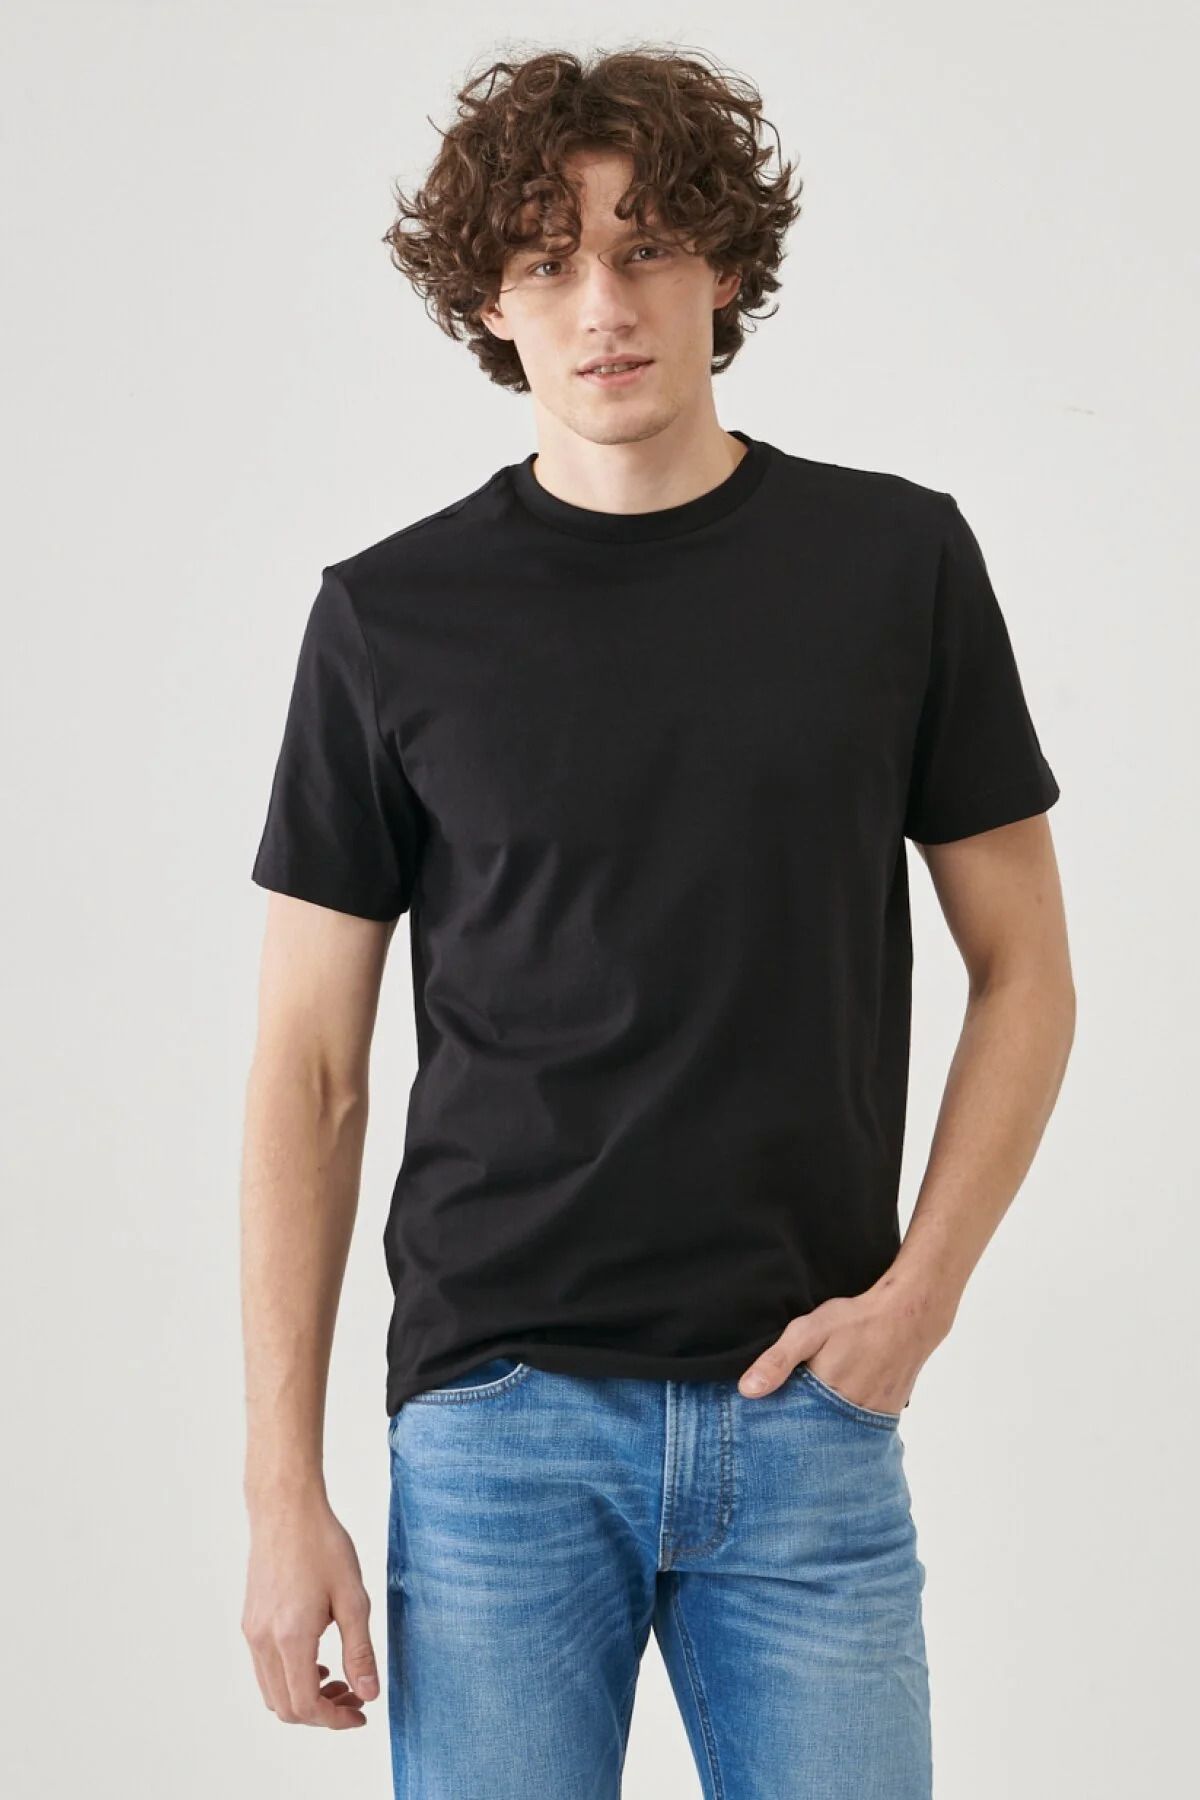 T-shirt Lee Yorumları Fiyatı, Pamuk L221069001 Sıfır - %100 Regular Trendyol Erkek Fit Siyah Yaka